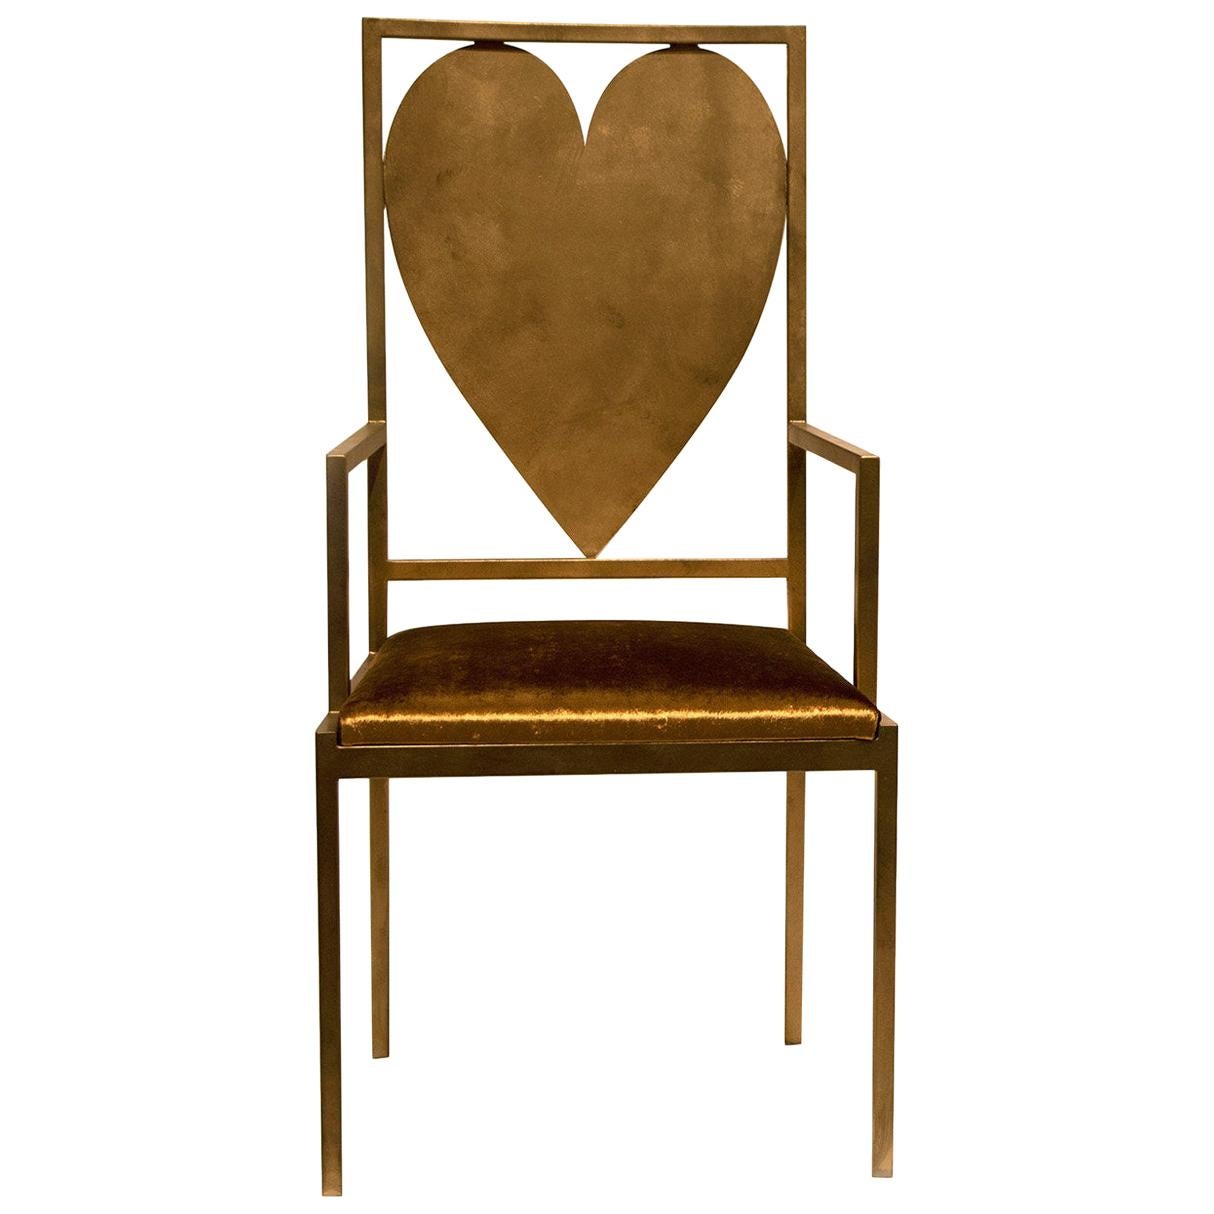 Heart Throne Chair